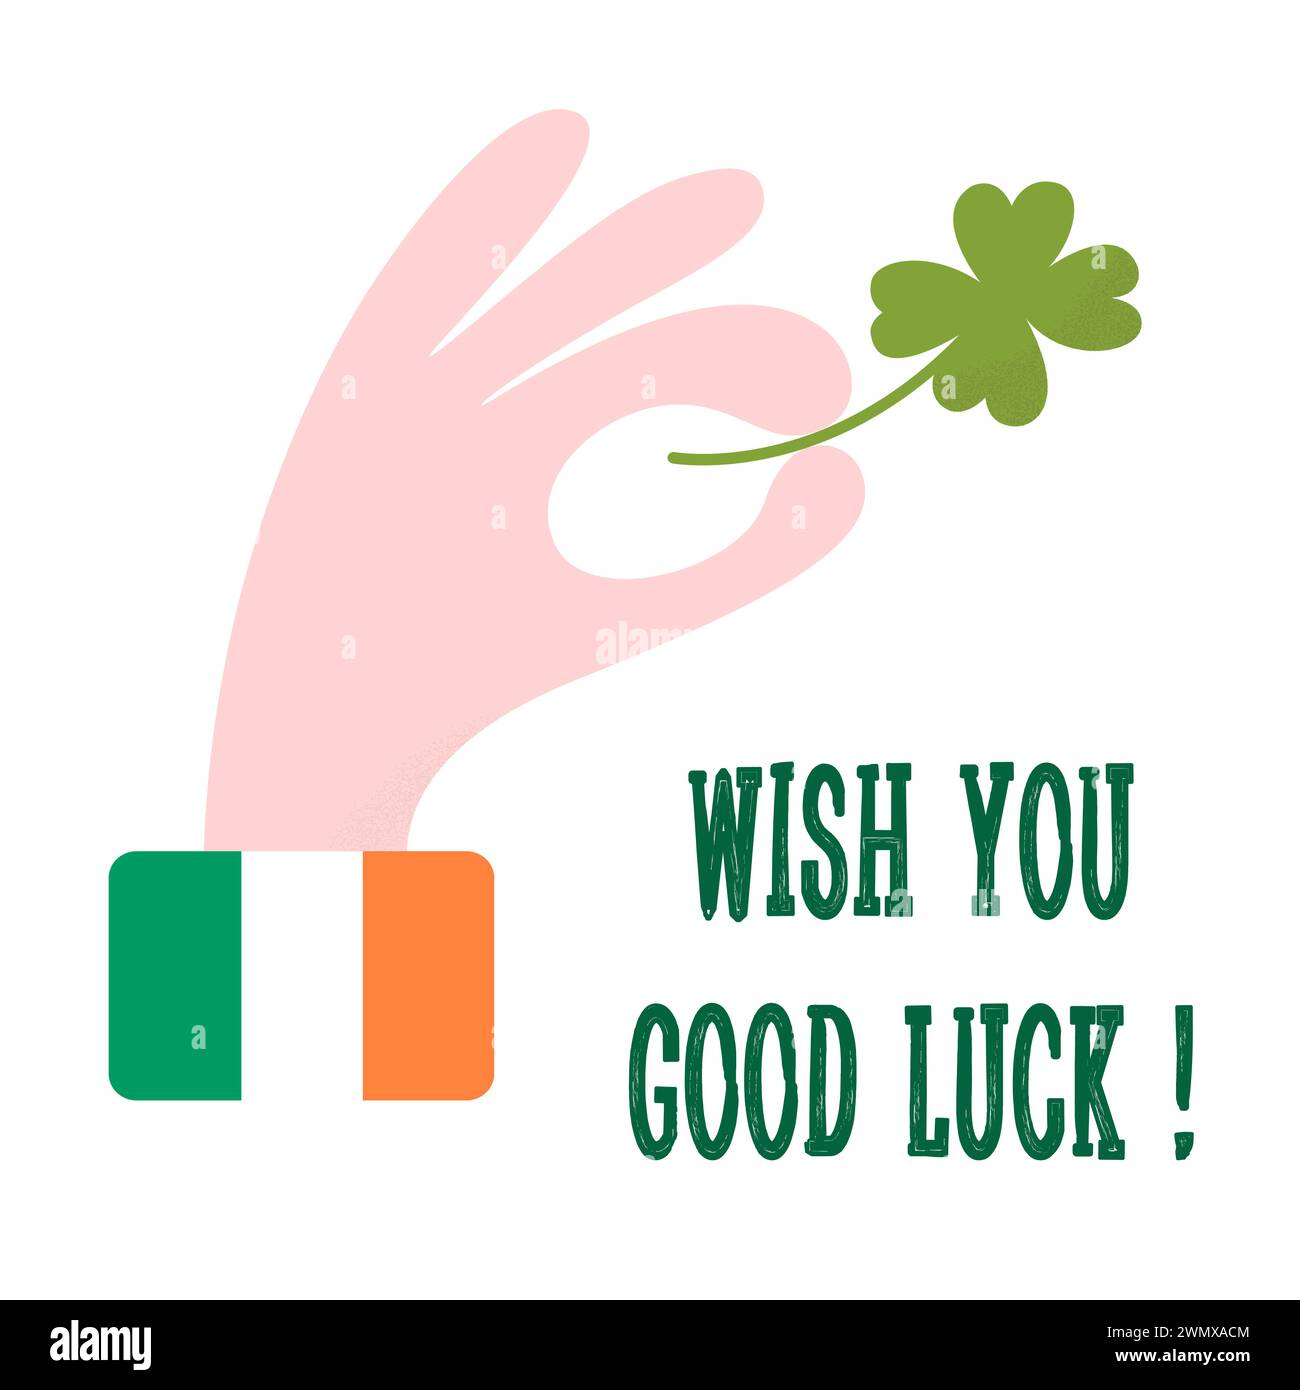 St. Patrick's Day. Shamrock mit vier Blättern in der Hand, Farben der irischen Flagge auf dem Hemdärmel. Glückwunsch-Grußkarte, Poster Stock Vektor